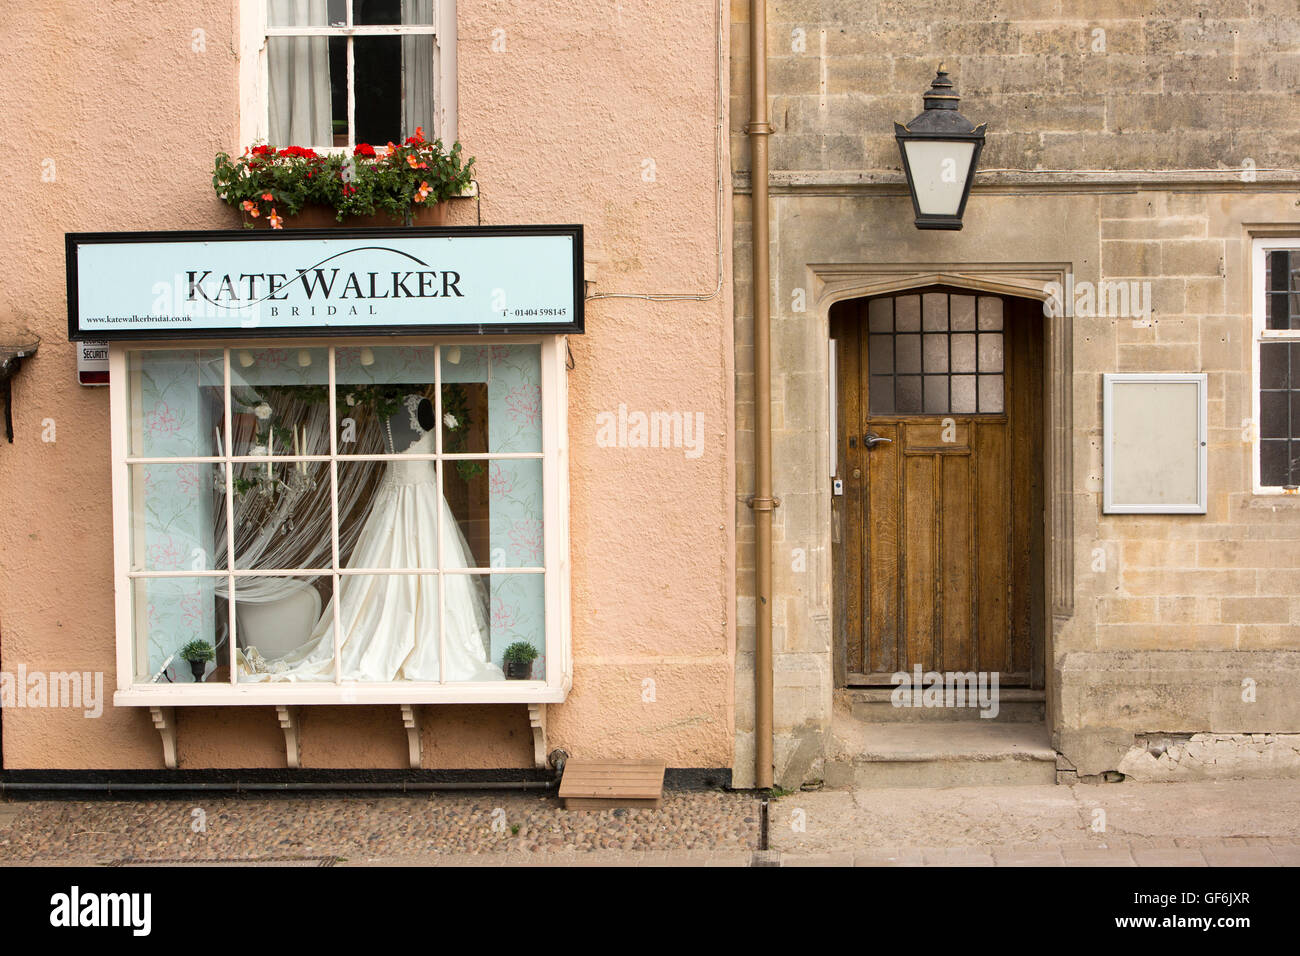 Großbritannien, England, Devon, Honiton, High Street, Kate Walker Brautmodengeschäft Fenster und Tür des ehemaligen Red Cow pub Stockfoto